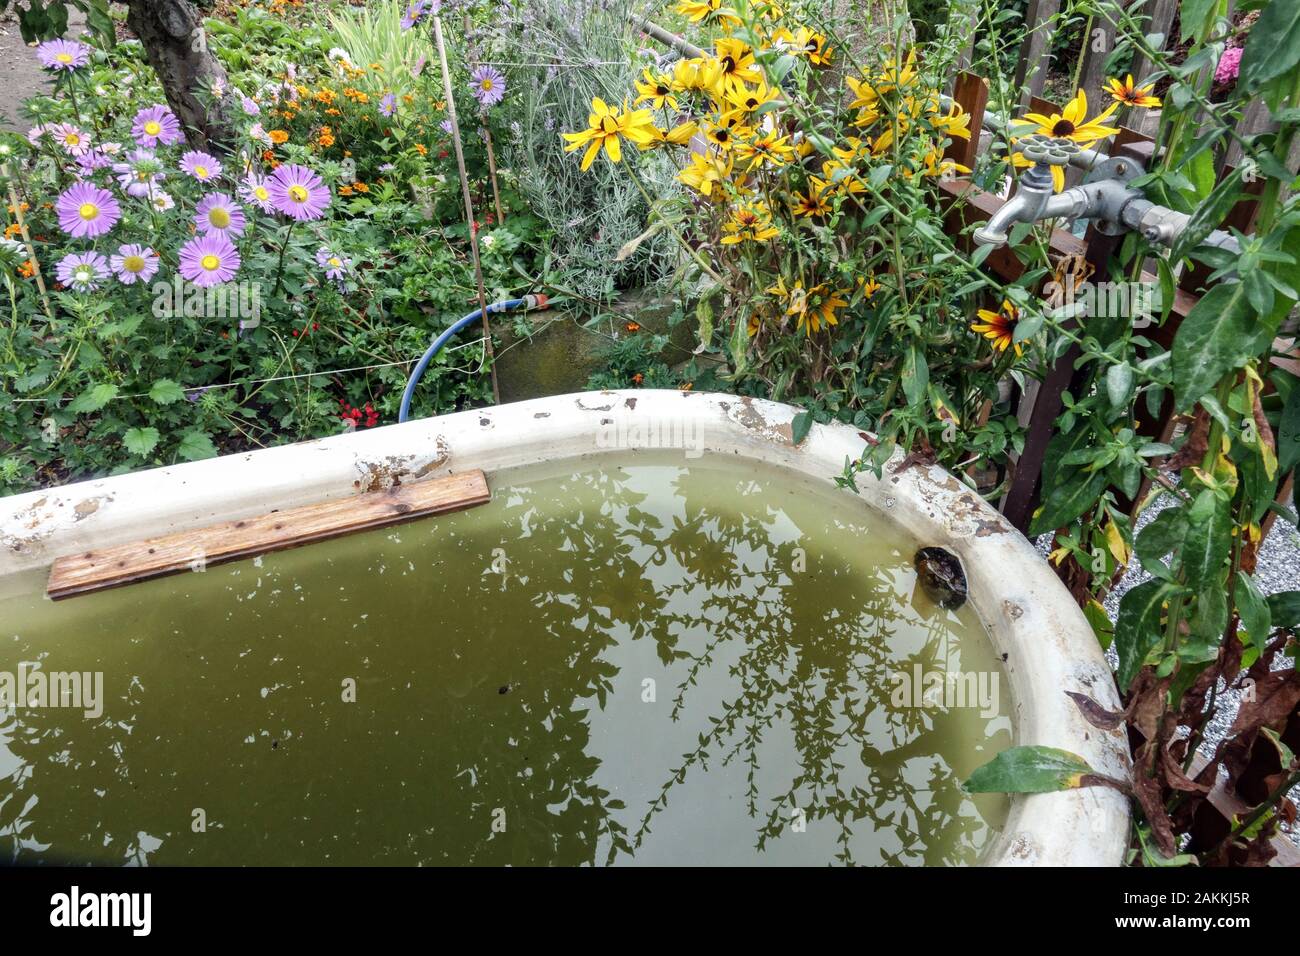 Regenwasser in einer alten Badewanne auf einem Bewässerungsgarten, sammeln Regenwasser Stockfoto